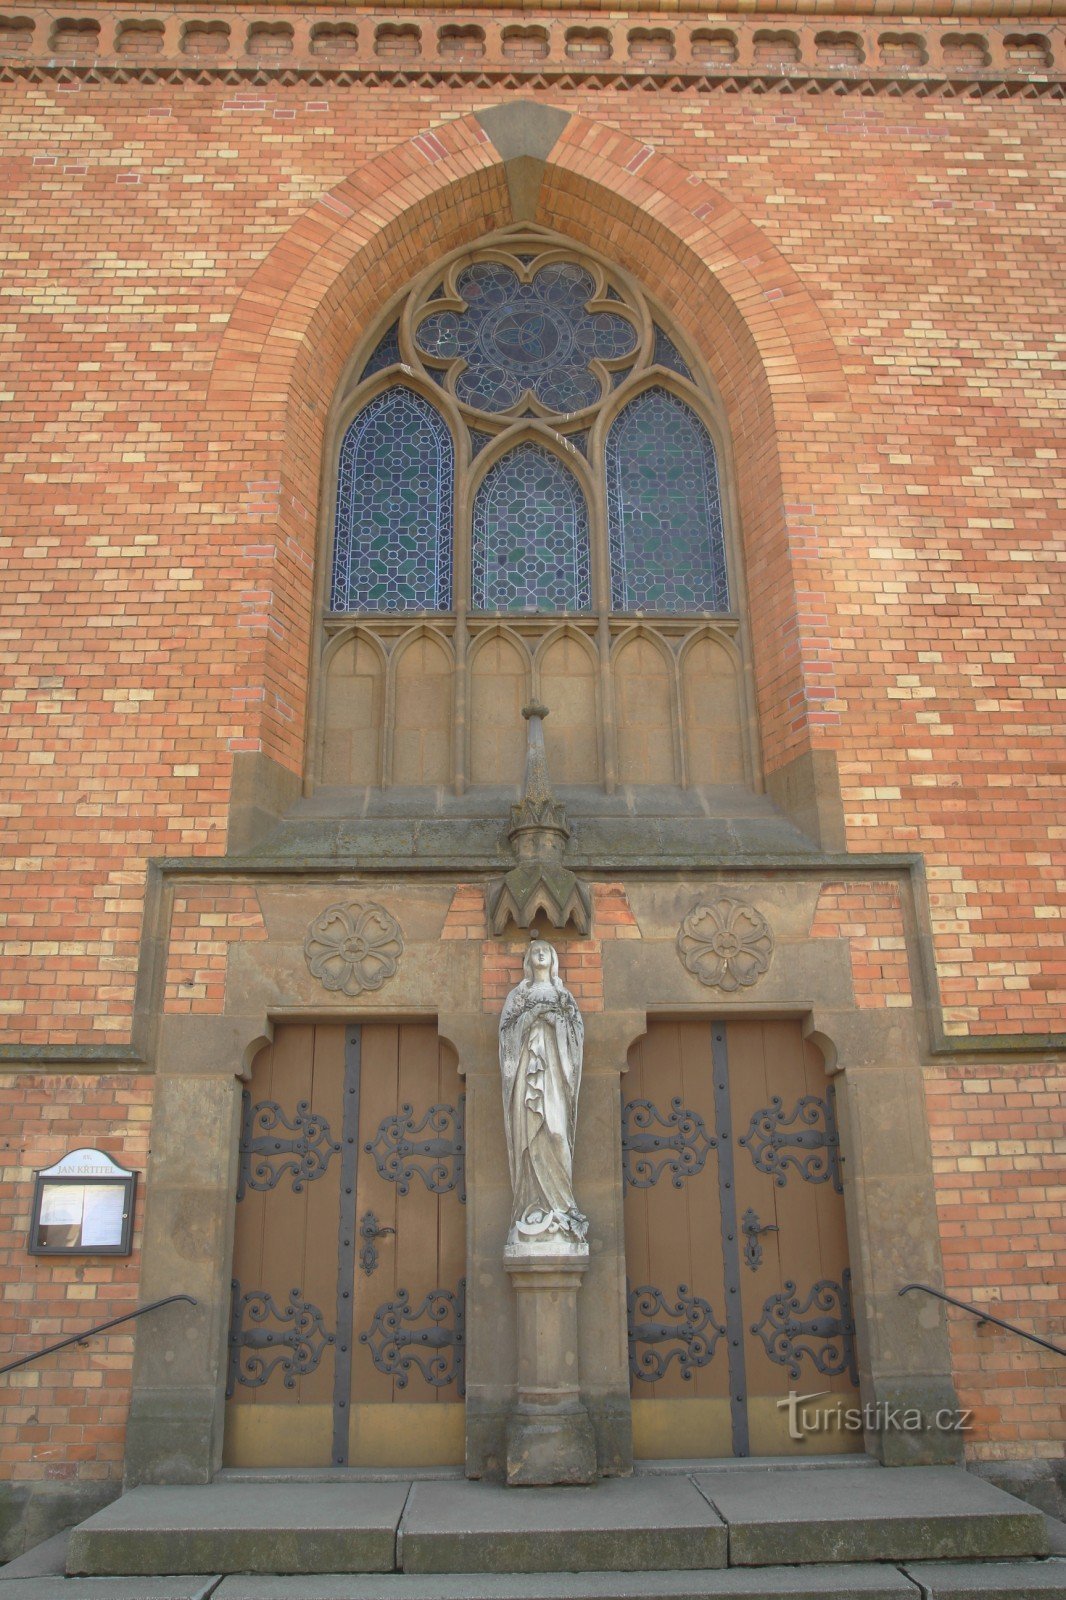 Фрагмент главного входа в церковь